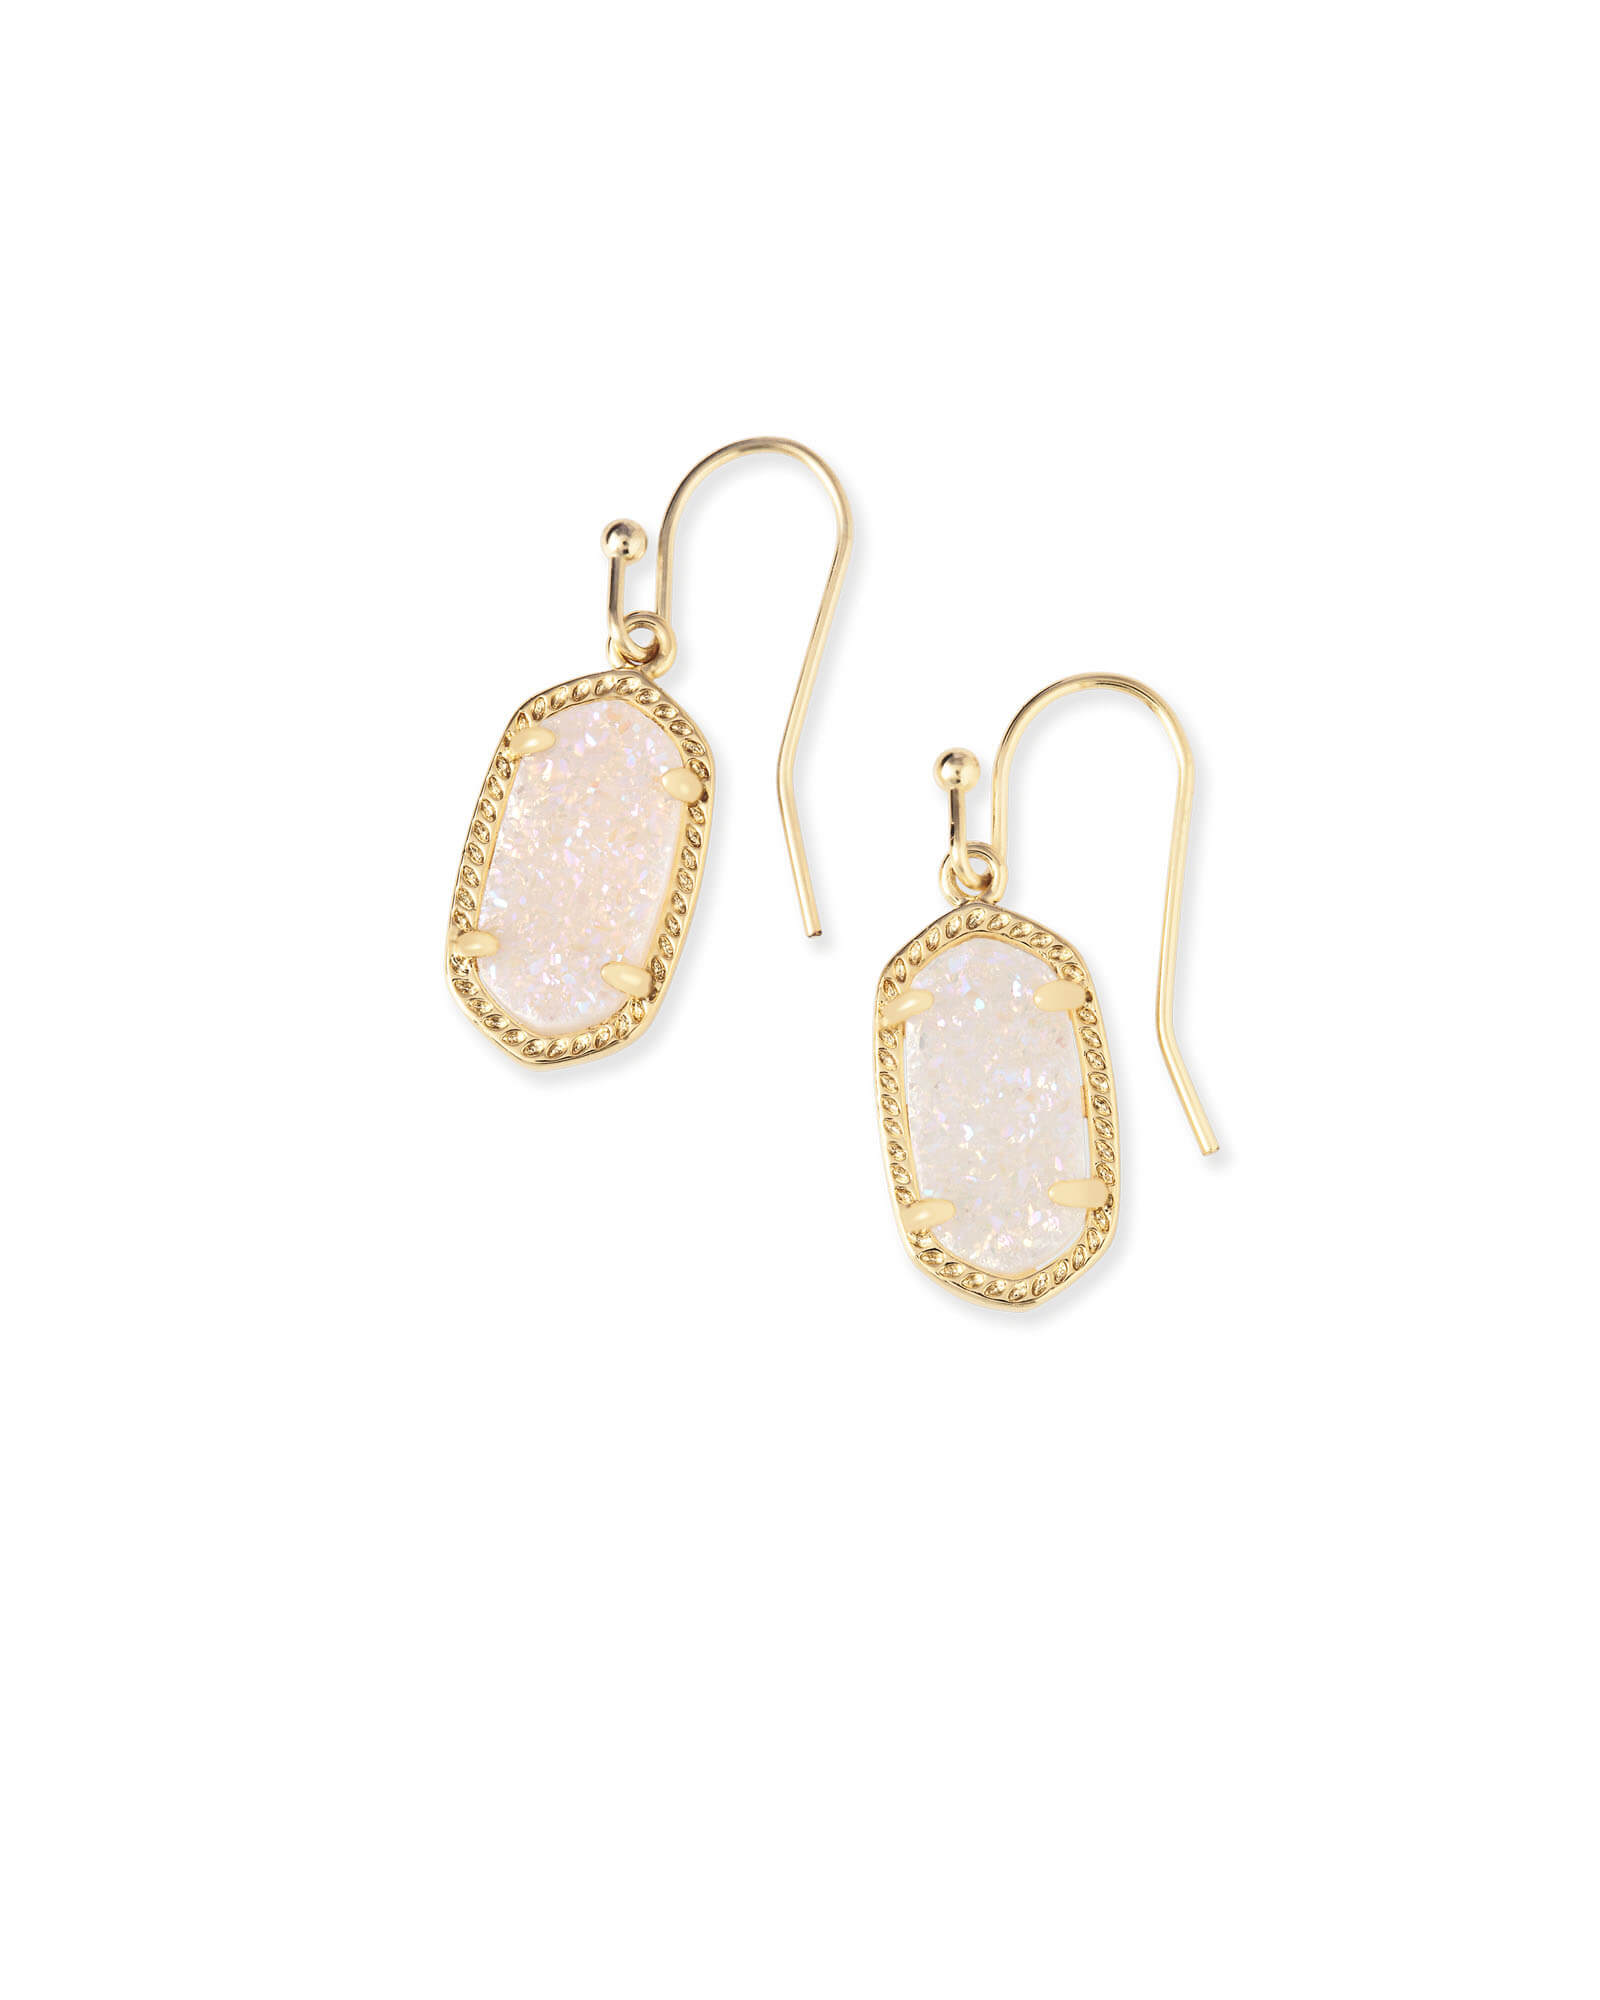 Lee Gold Drop Earrings in Iridescent Drusy | Kendra Scott